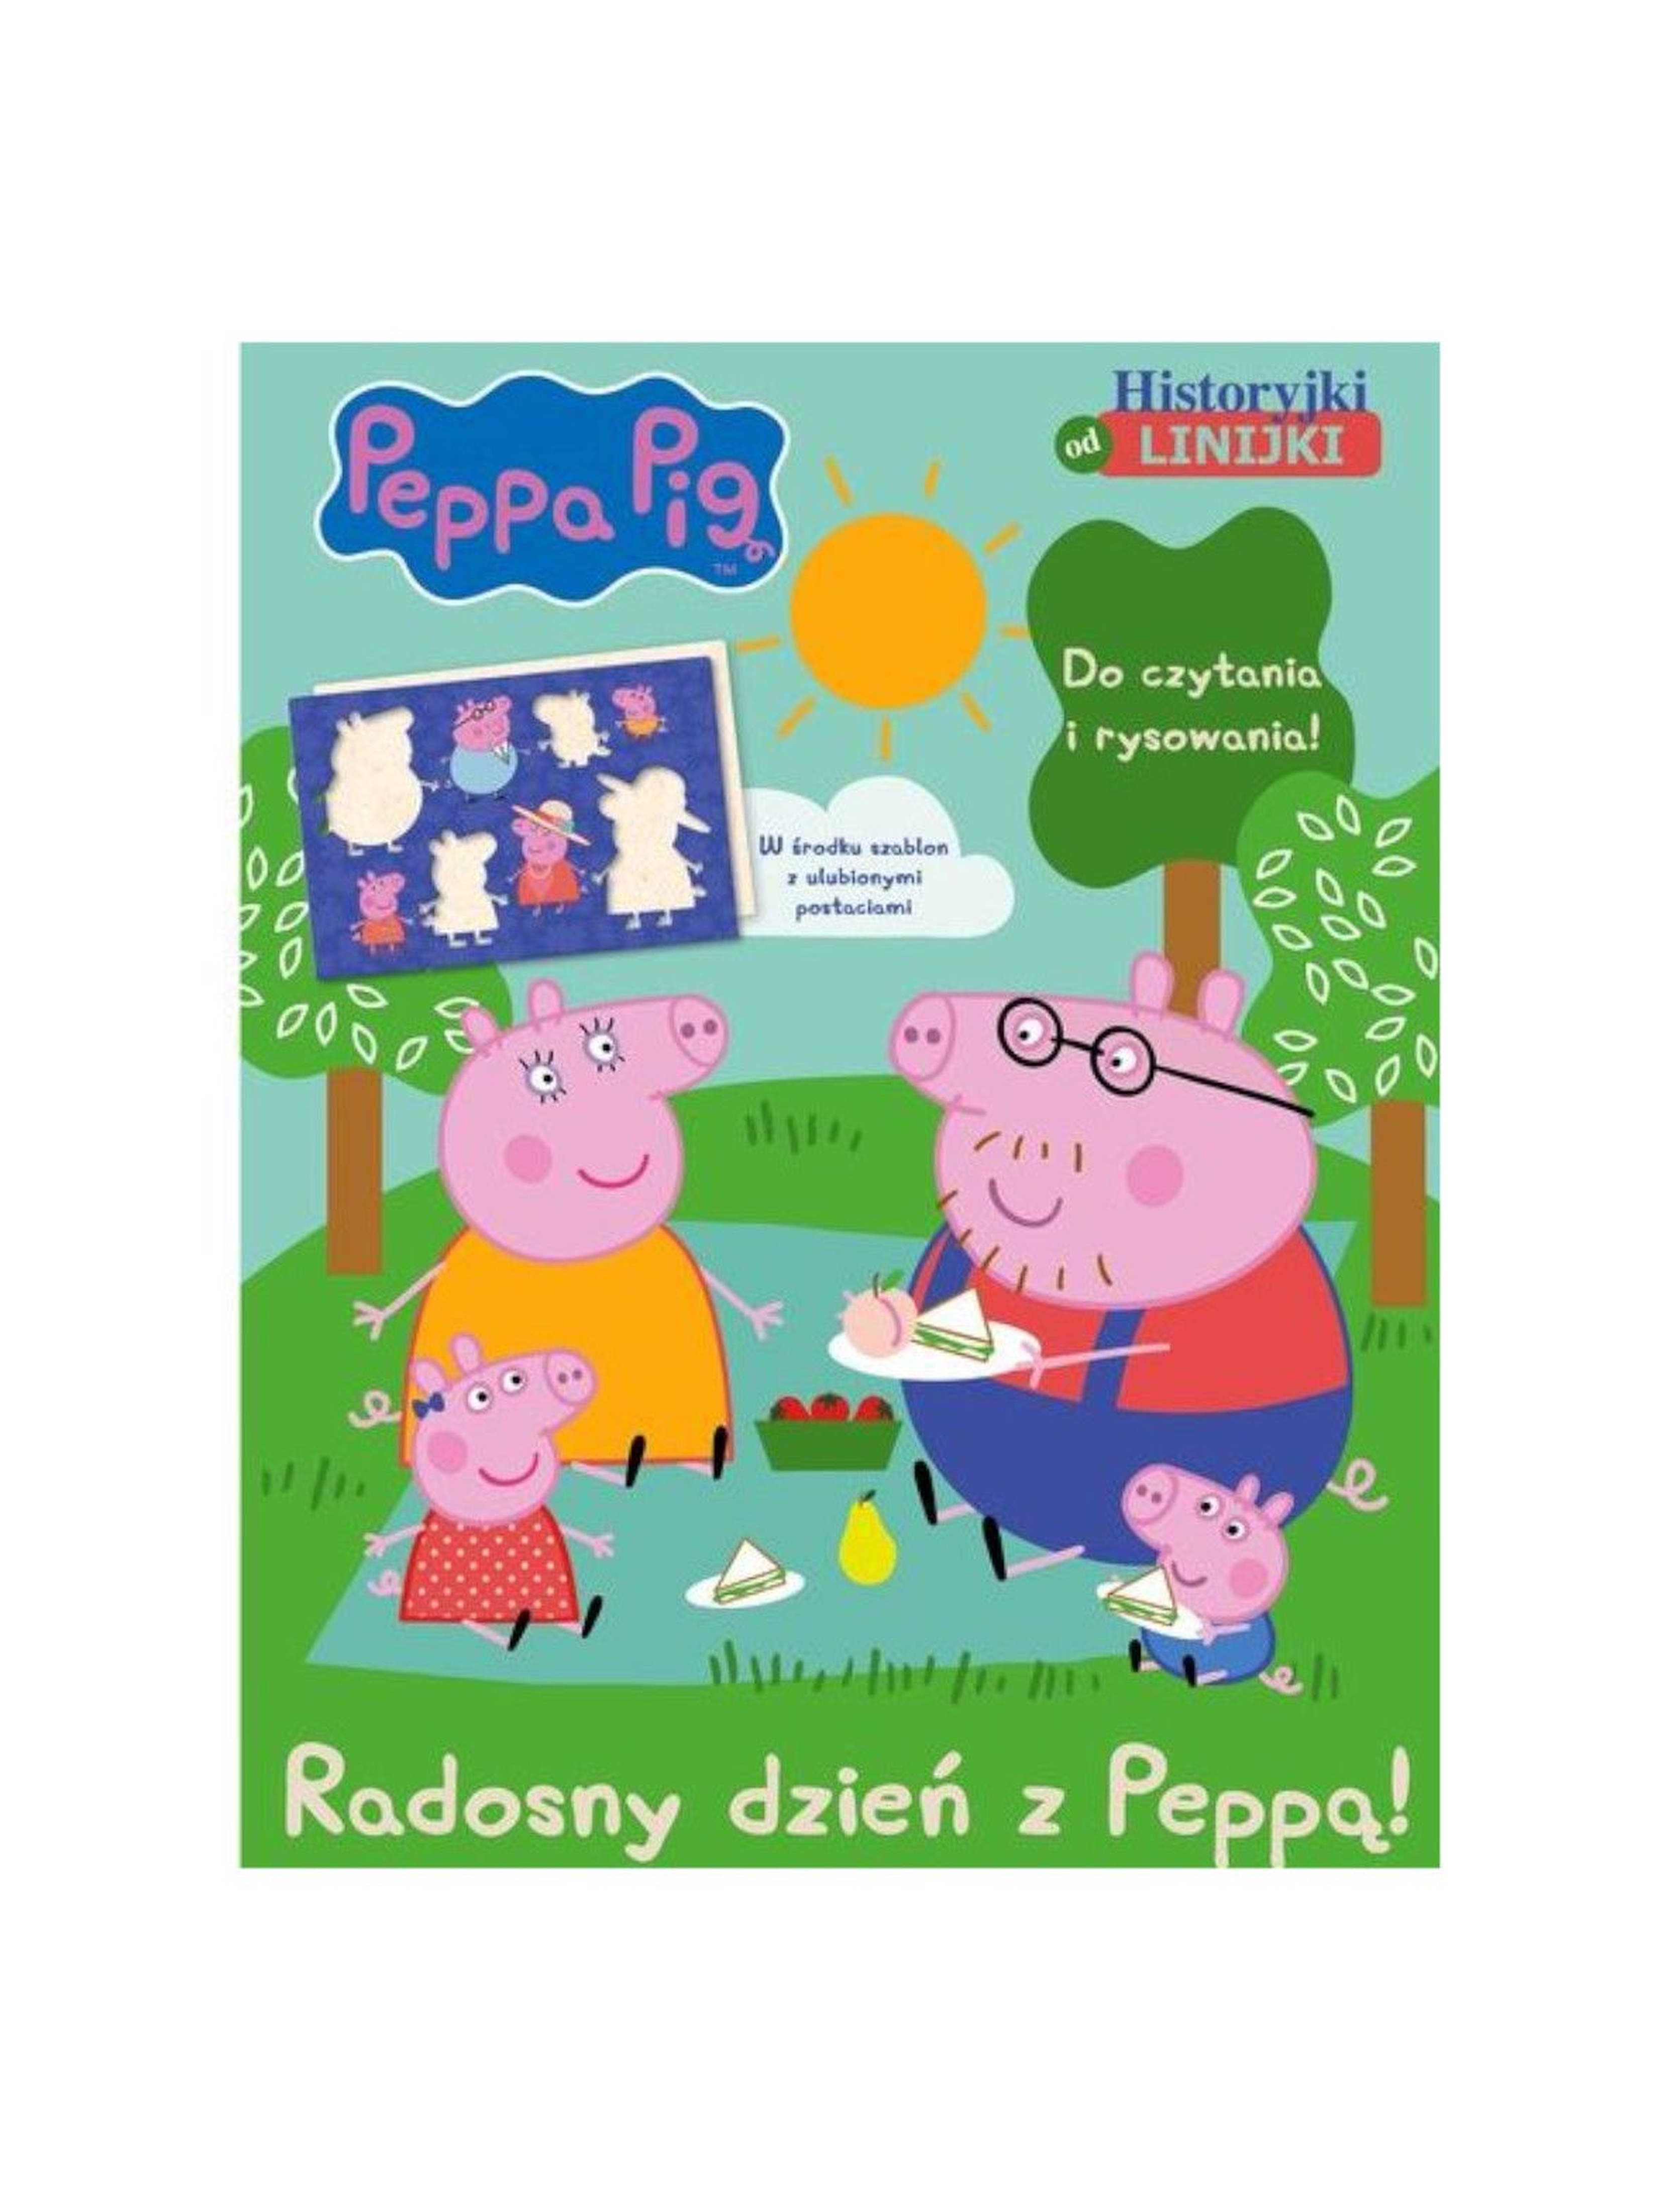 Książka dla dzieci "Peppa Pig. Historyjki od linijki. Radosny dzień z Peppą"